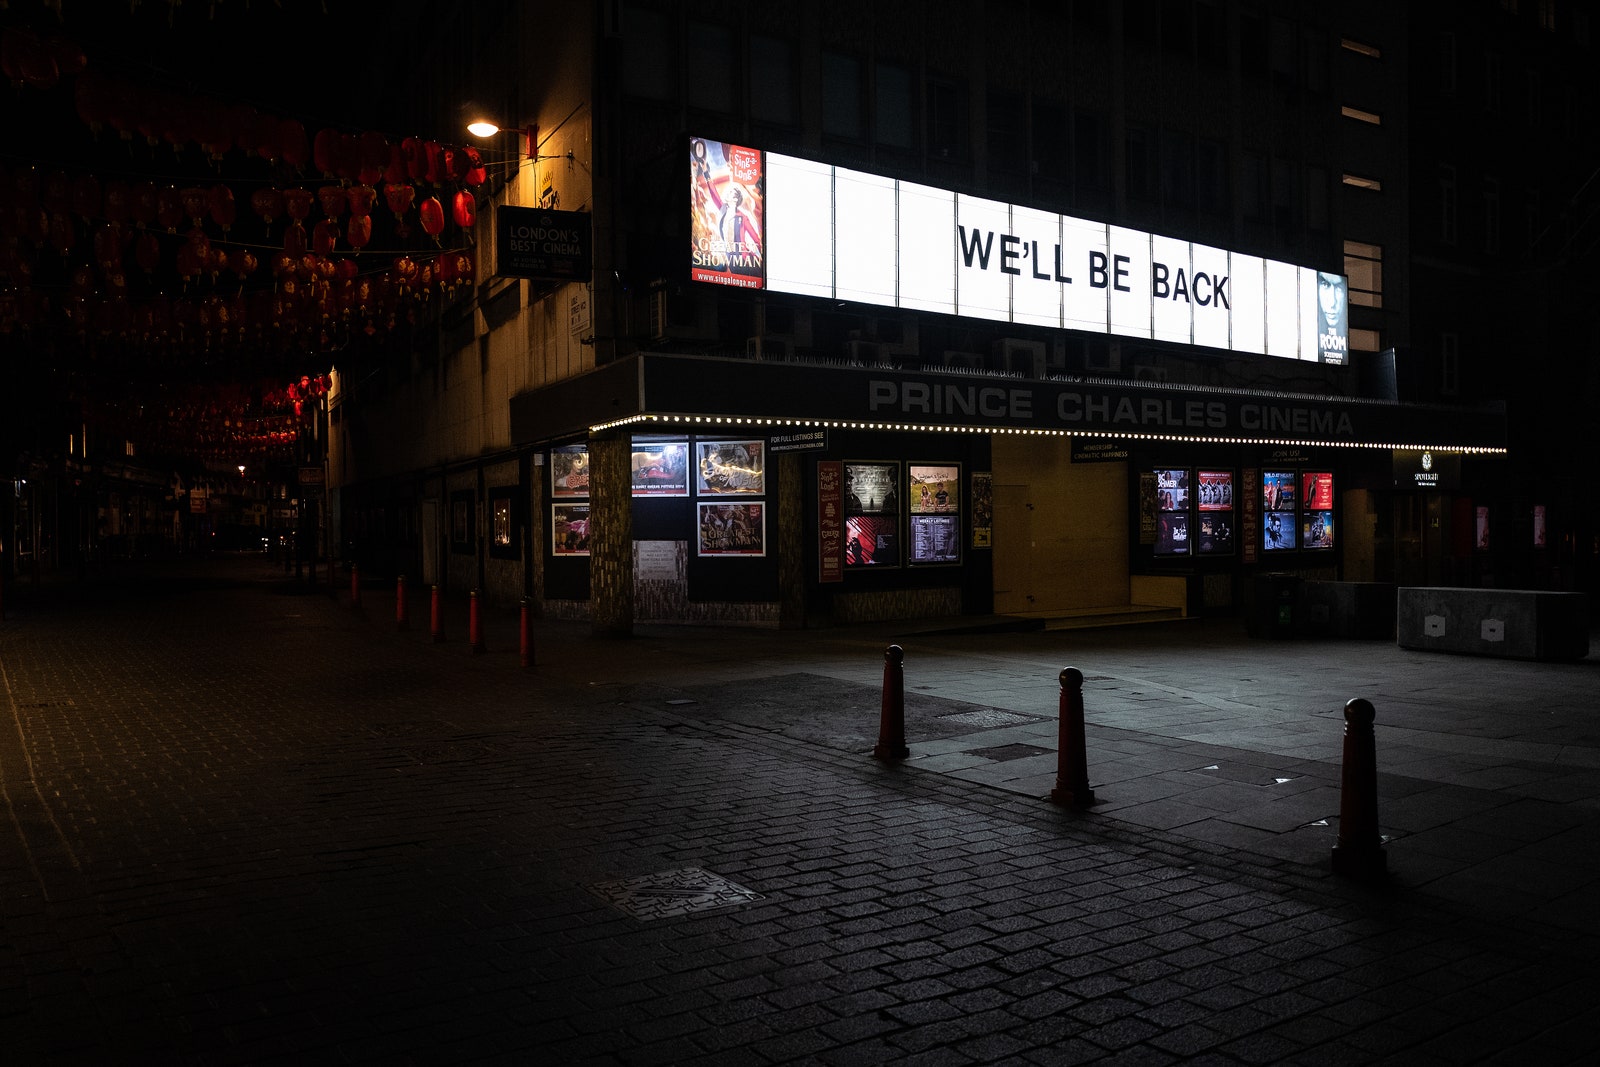 Закрытый кинотеатр Prince Charles в Лондоне март 2020